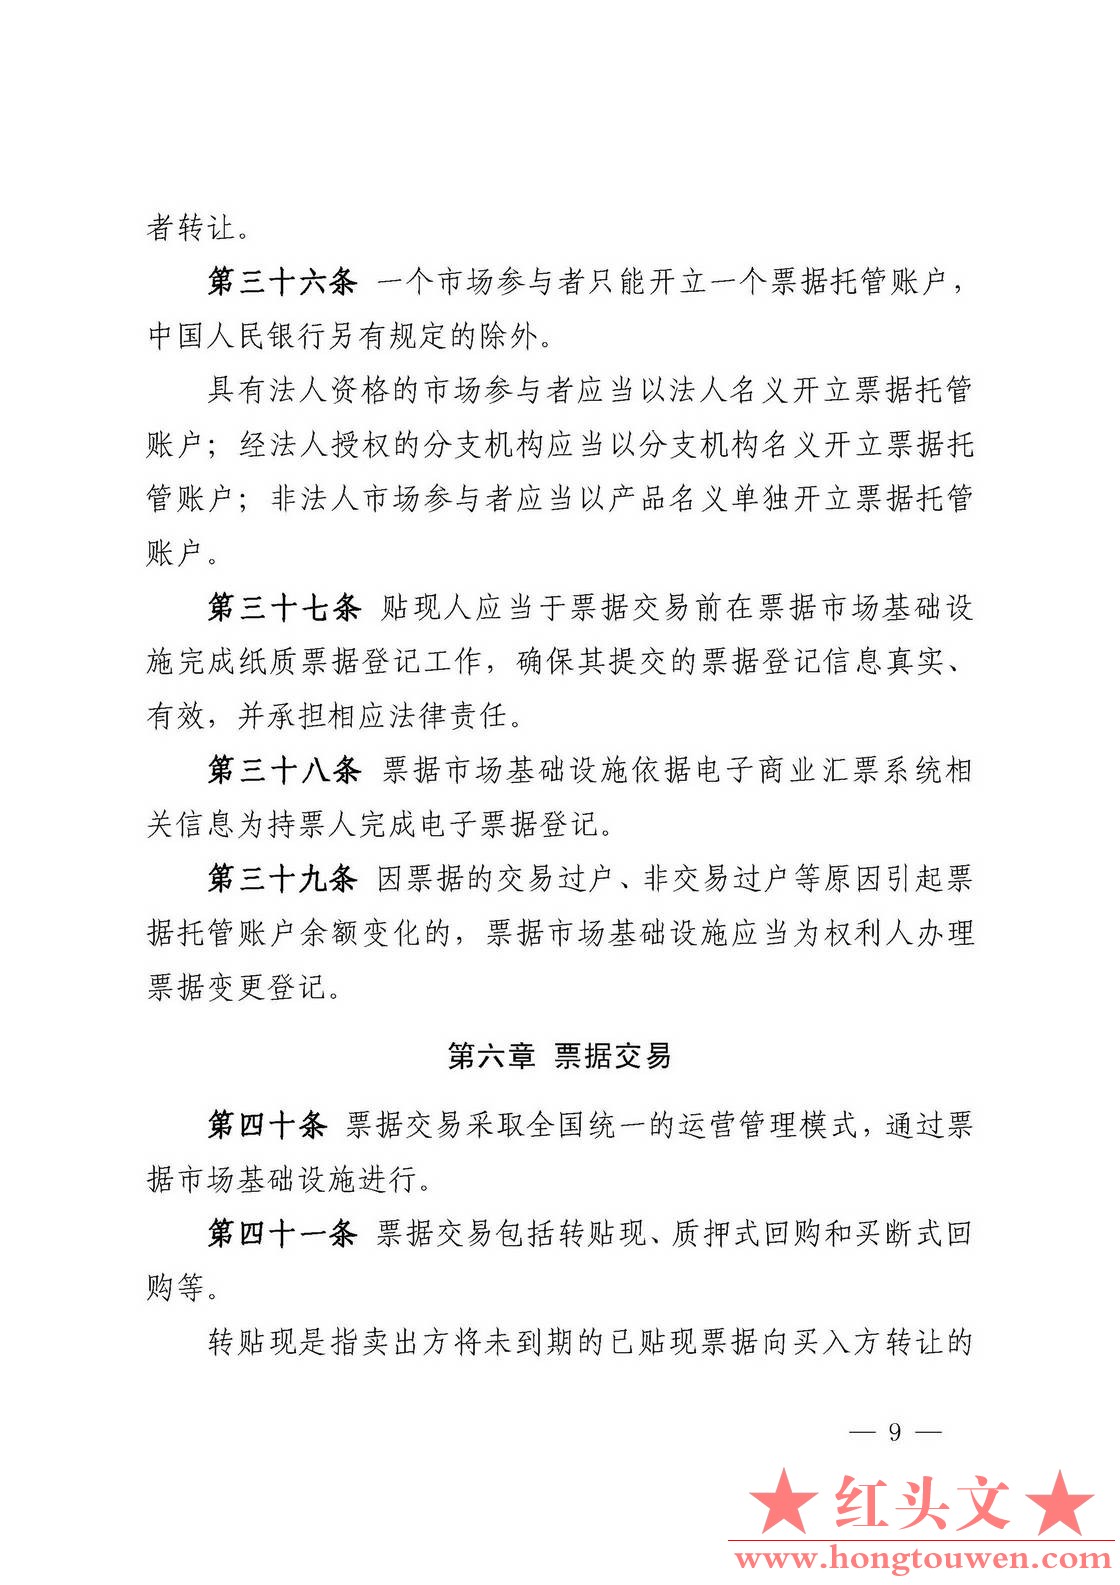 中国人民银行公告[2016]9号-票据交易管理办法_页面_09.jpg